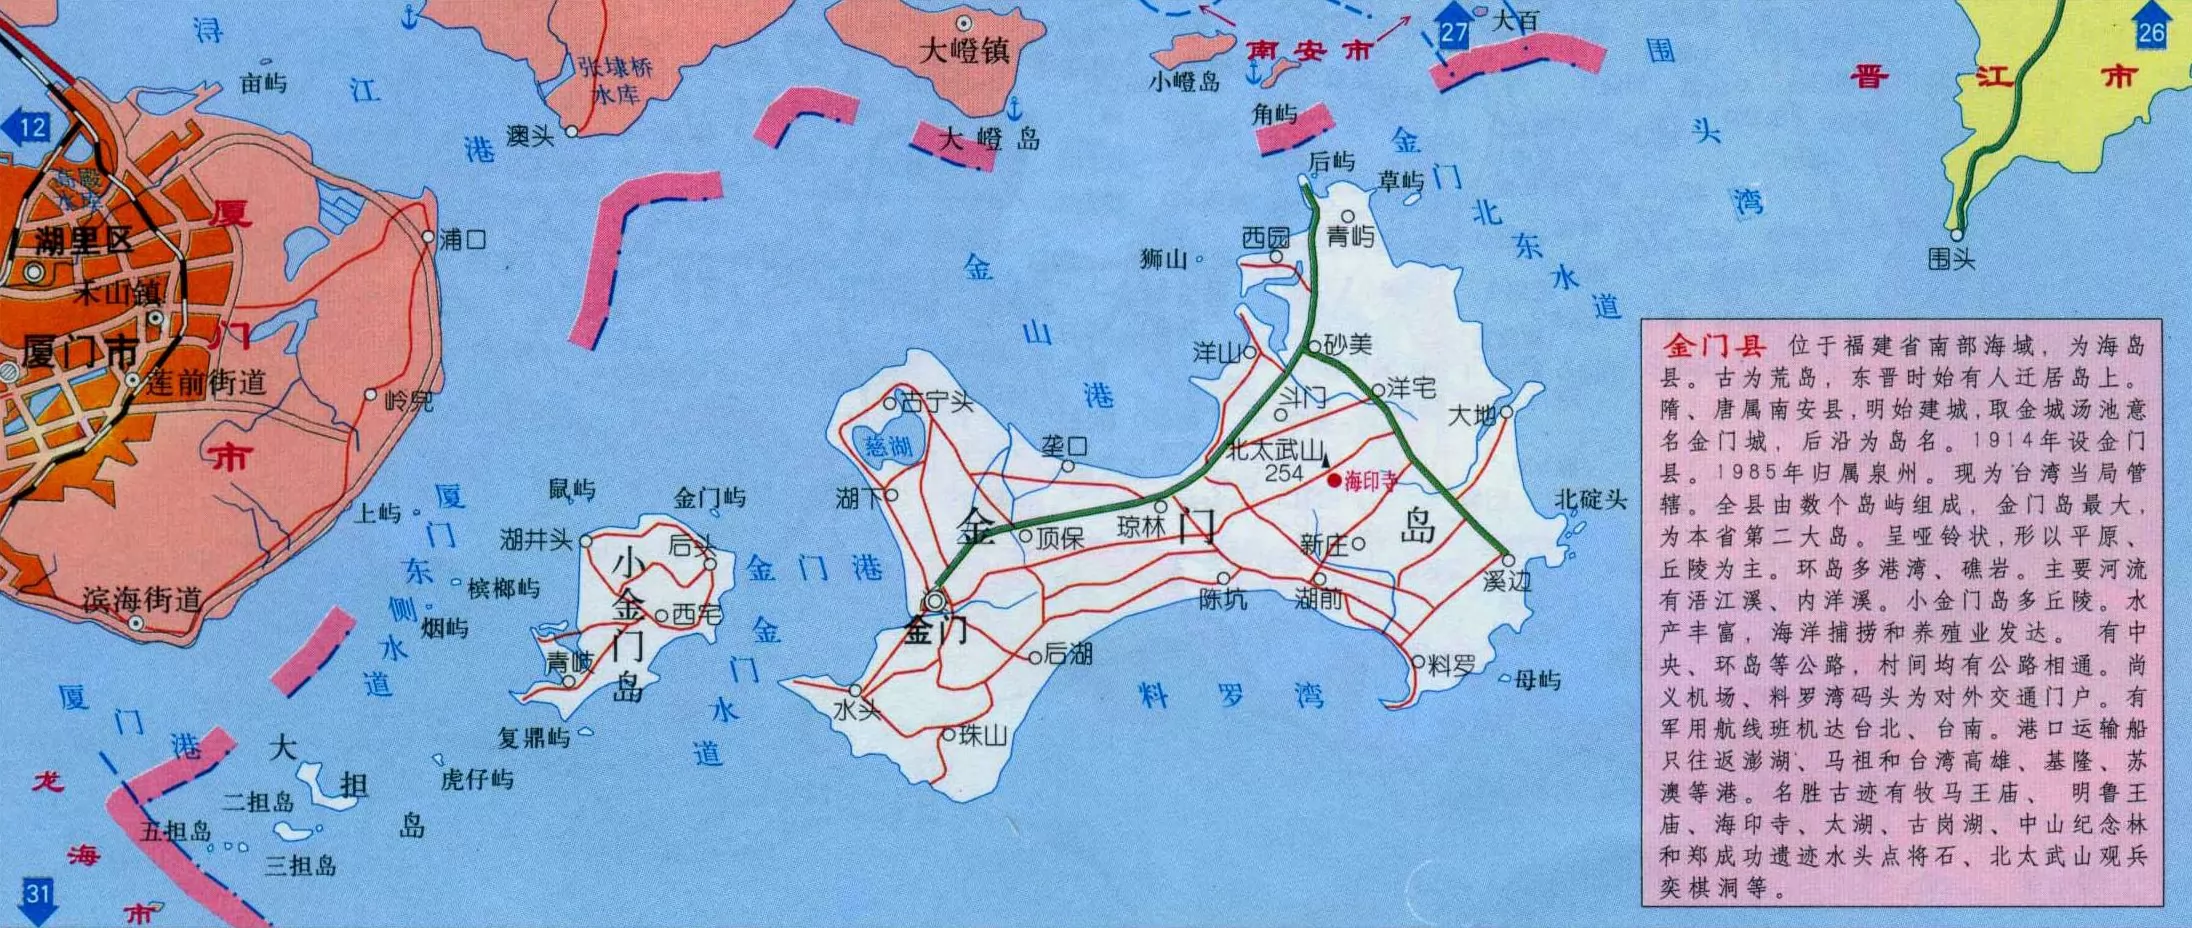 中国县级行政区划图中国行政区划空白图 中国地图行政区划图 图片